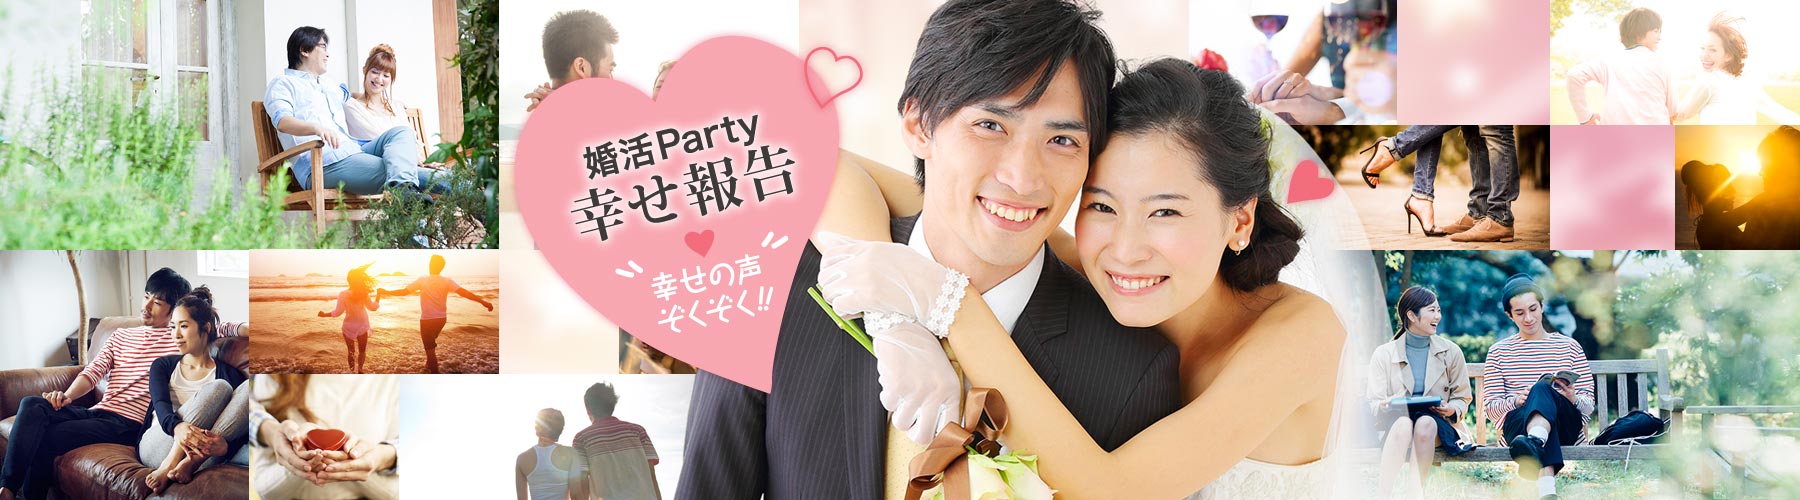 「婚活Party幸せ報告・幸せの声ぞくぞく!!